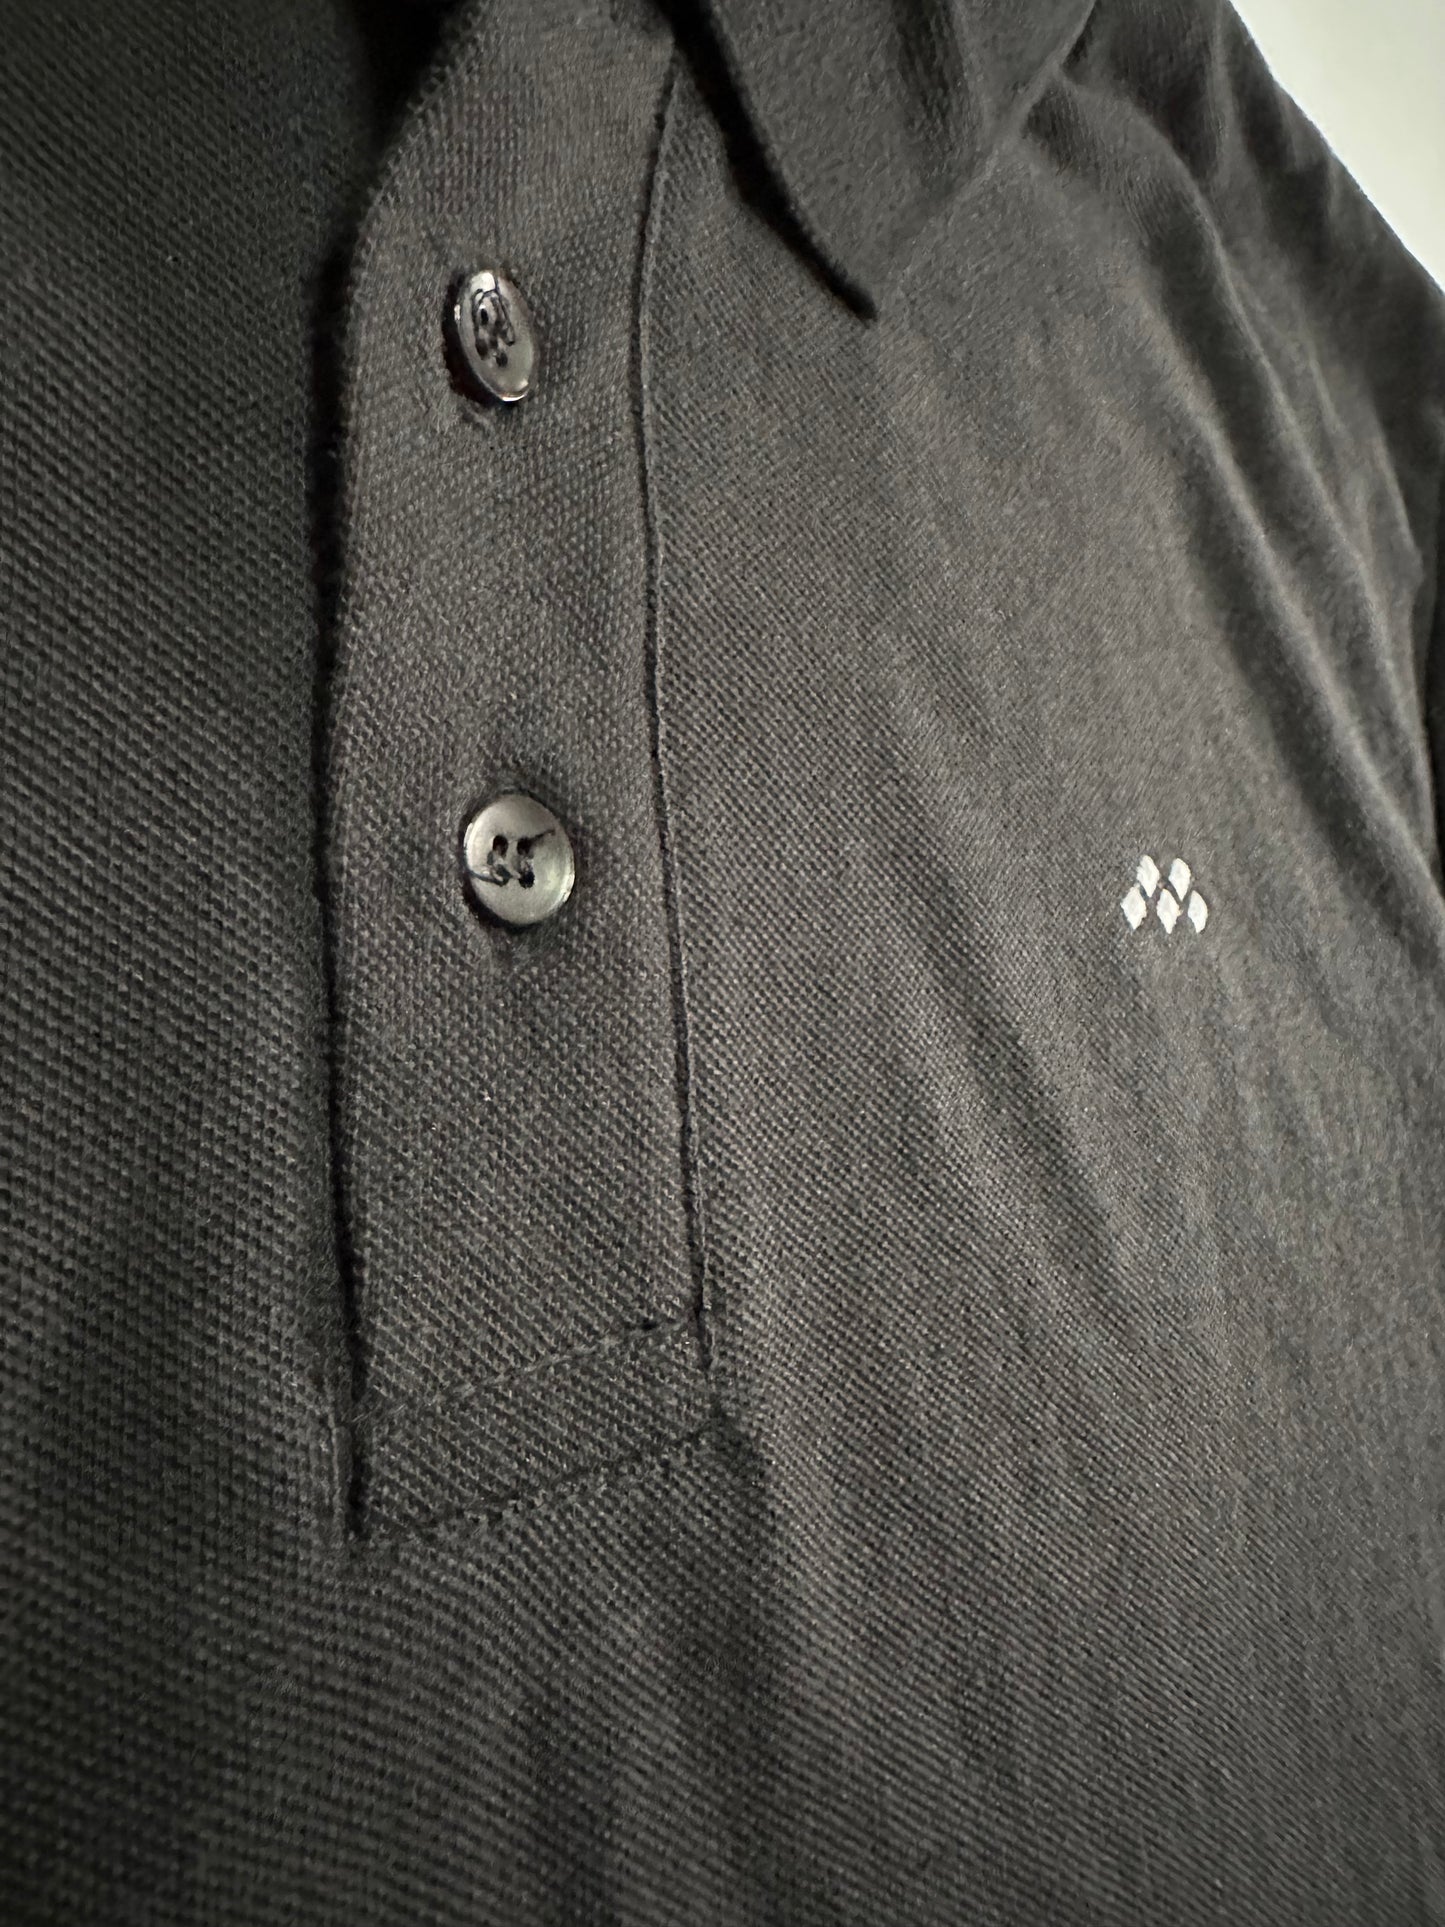 Vived-Mota Co. Classic Contrast Emblem Polo “Black”